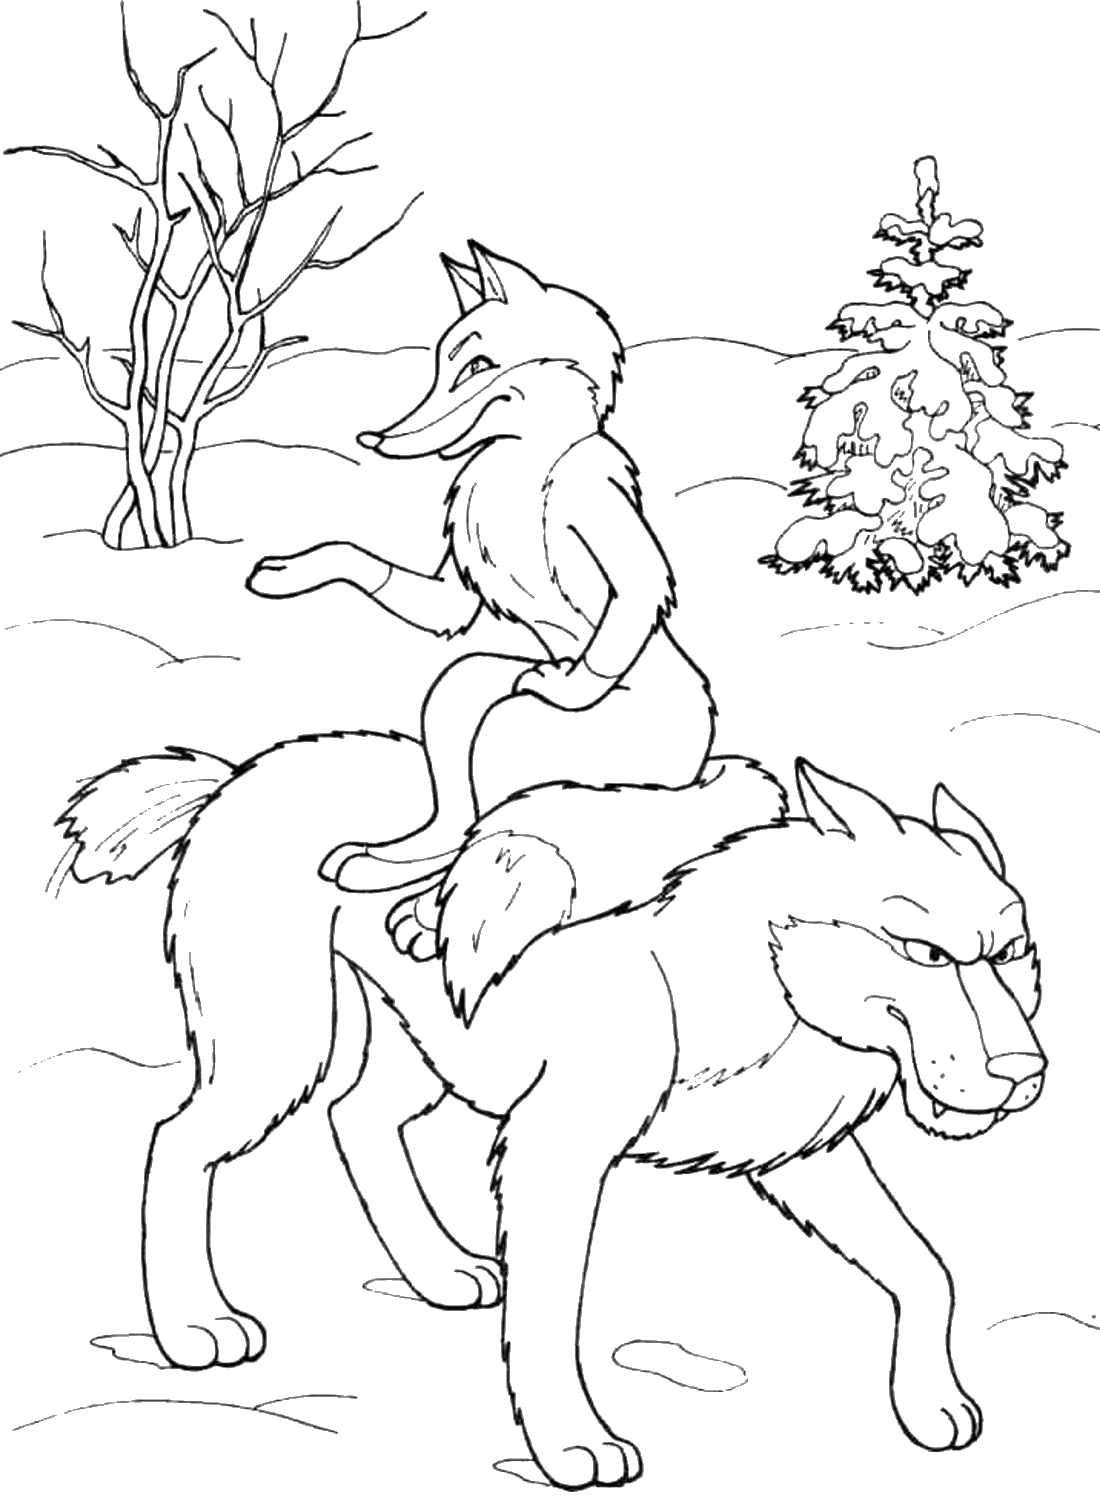 Раскраски для детей про волка из сказок